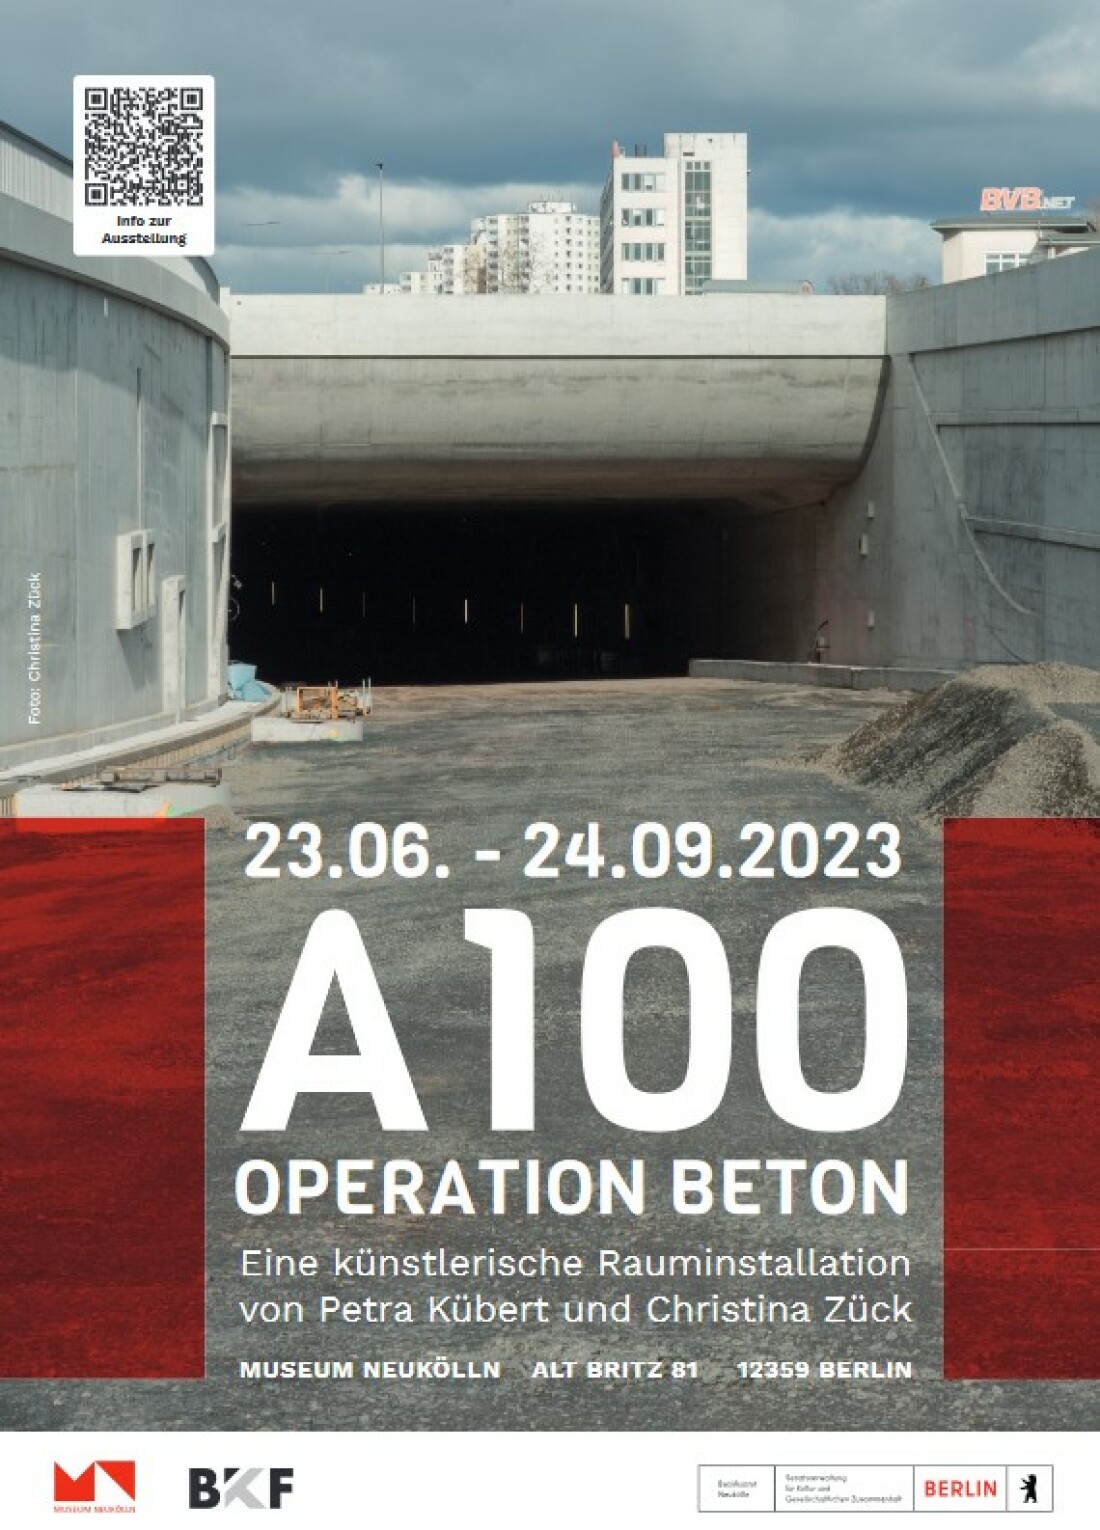 Operation Beton - lautet der Titel der Ausstellung von Petra Kübert + Christina Zück im #MuseumNeukoelln über den 16. Bauabschnitt der #A100 + den Protest gegen das Projekt. Vernissage am 22.6. 19 Uhr